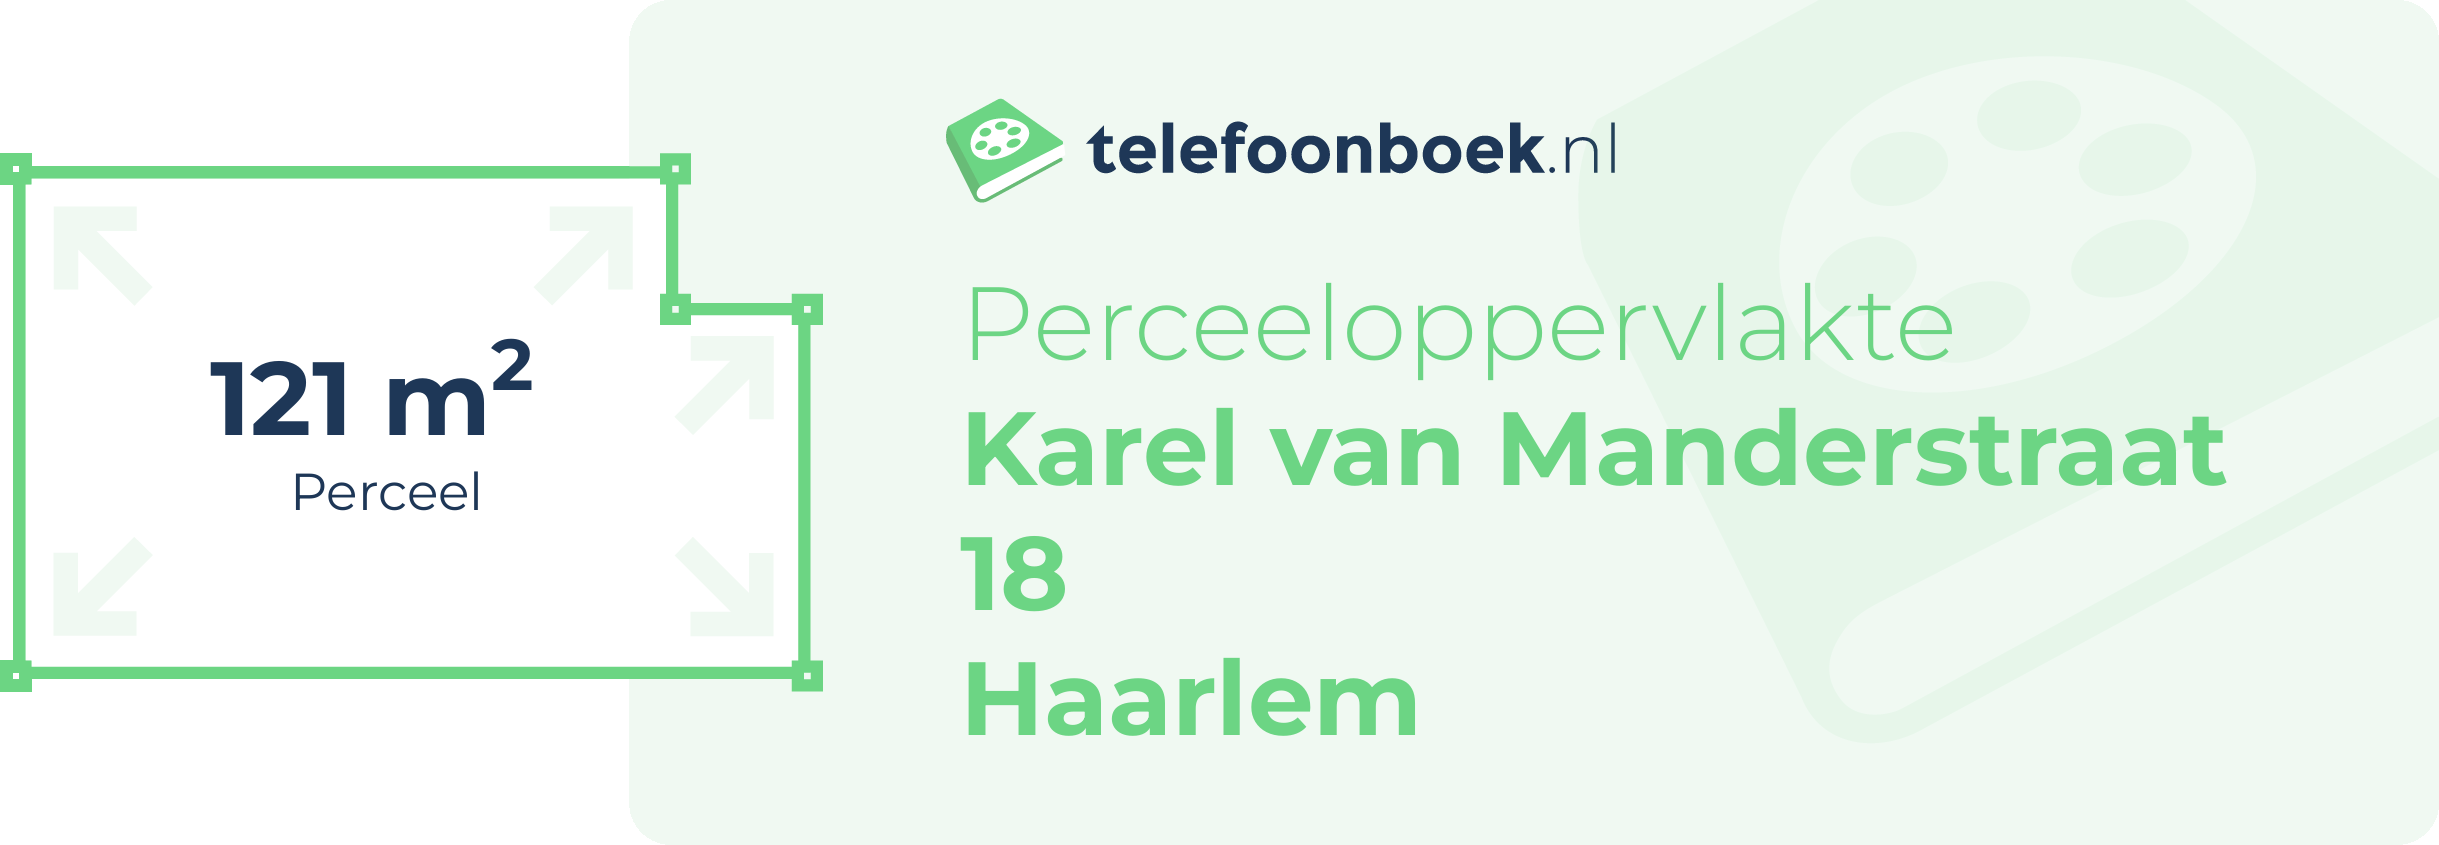 Perceeloppervlakte Karel Van Manderstraat 18 Haarlem